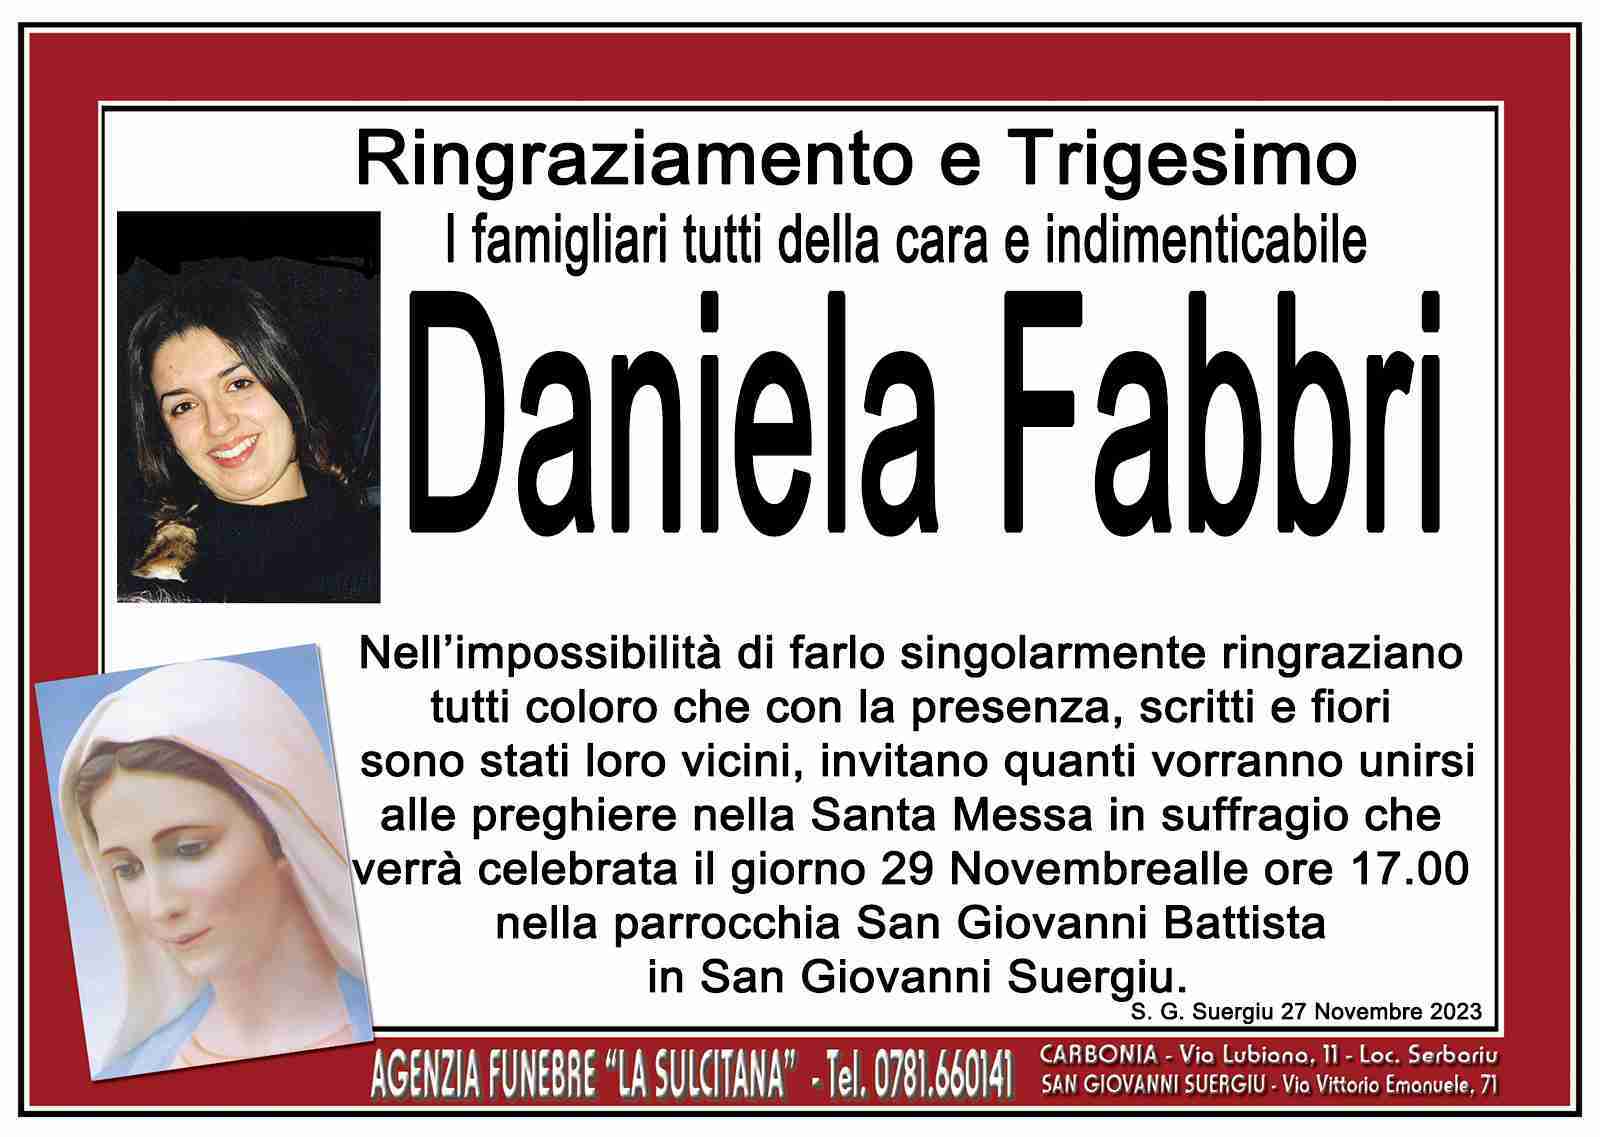 Daniela Fabbri